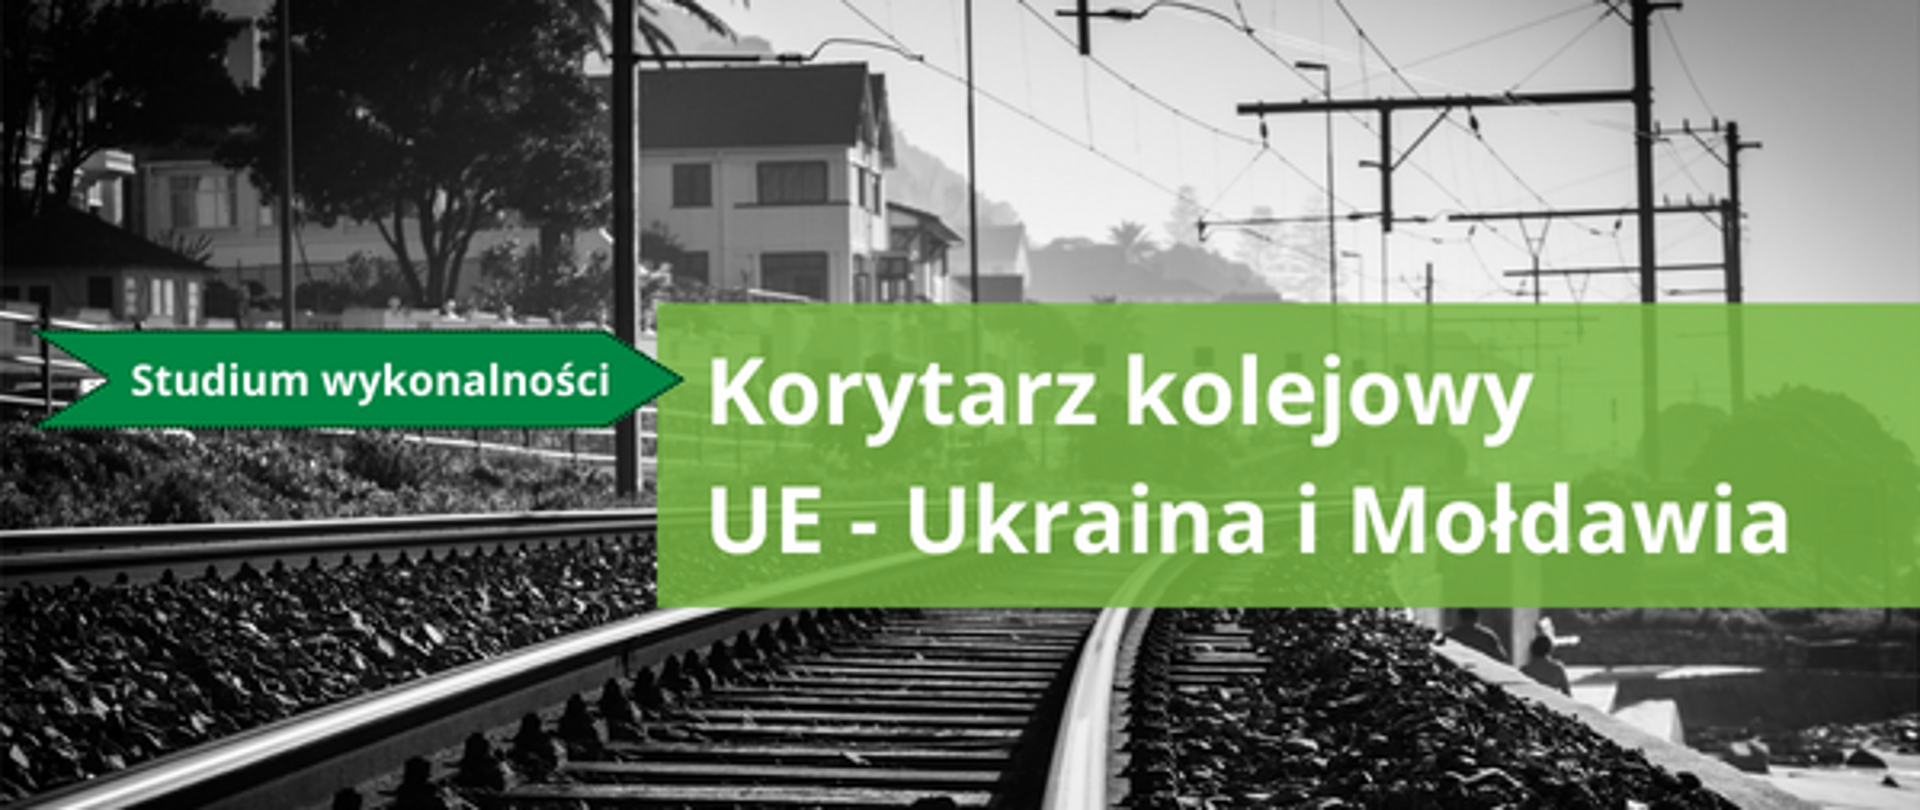 Korytarz kolejowy UE-Ukraina i Mołdawia, na zdjęciu widać tory kolejowe i budynki stojące przy nich